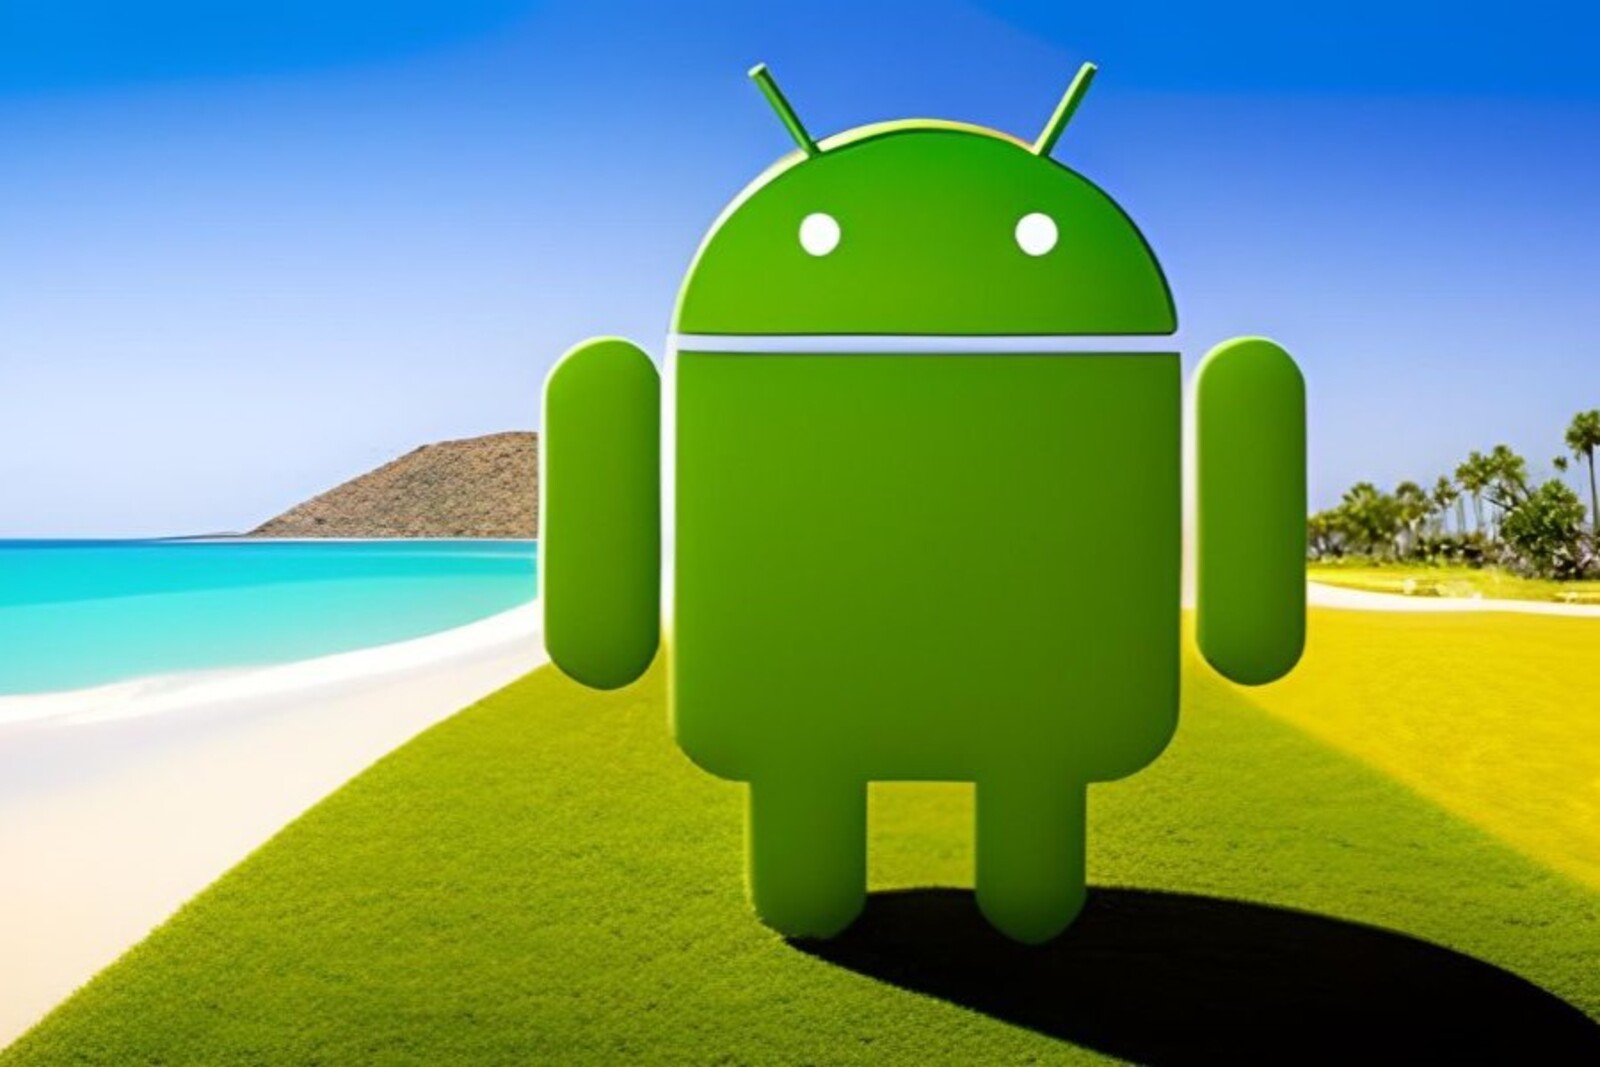 Connaissez-vous la particularité du logo Android ?